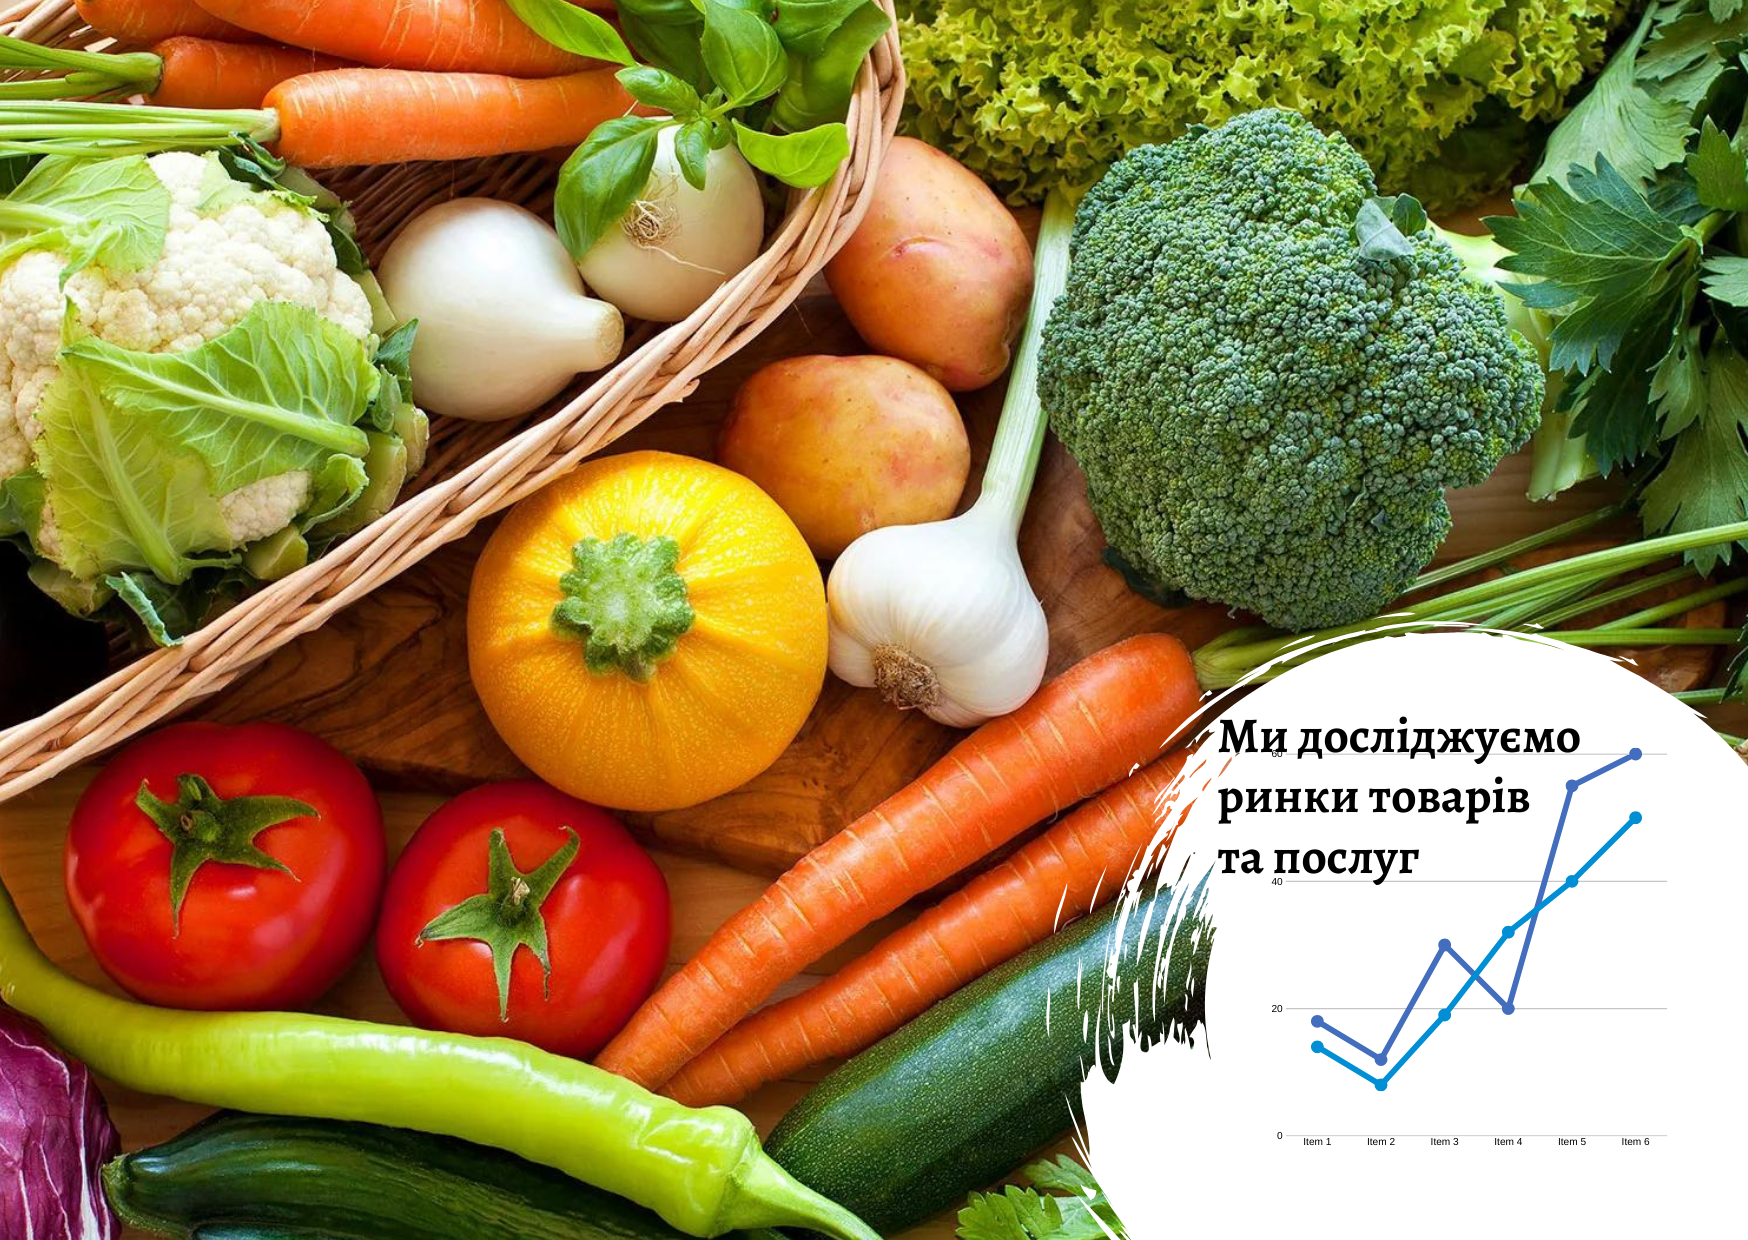 Рынок овощей в Украине – Pro-Consulting